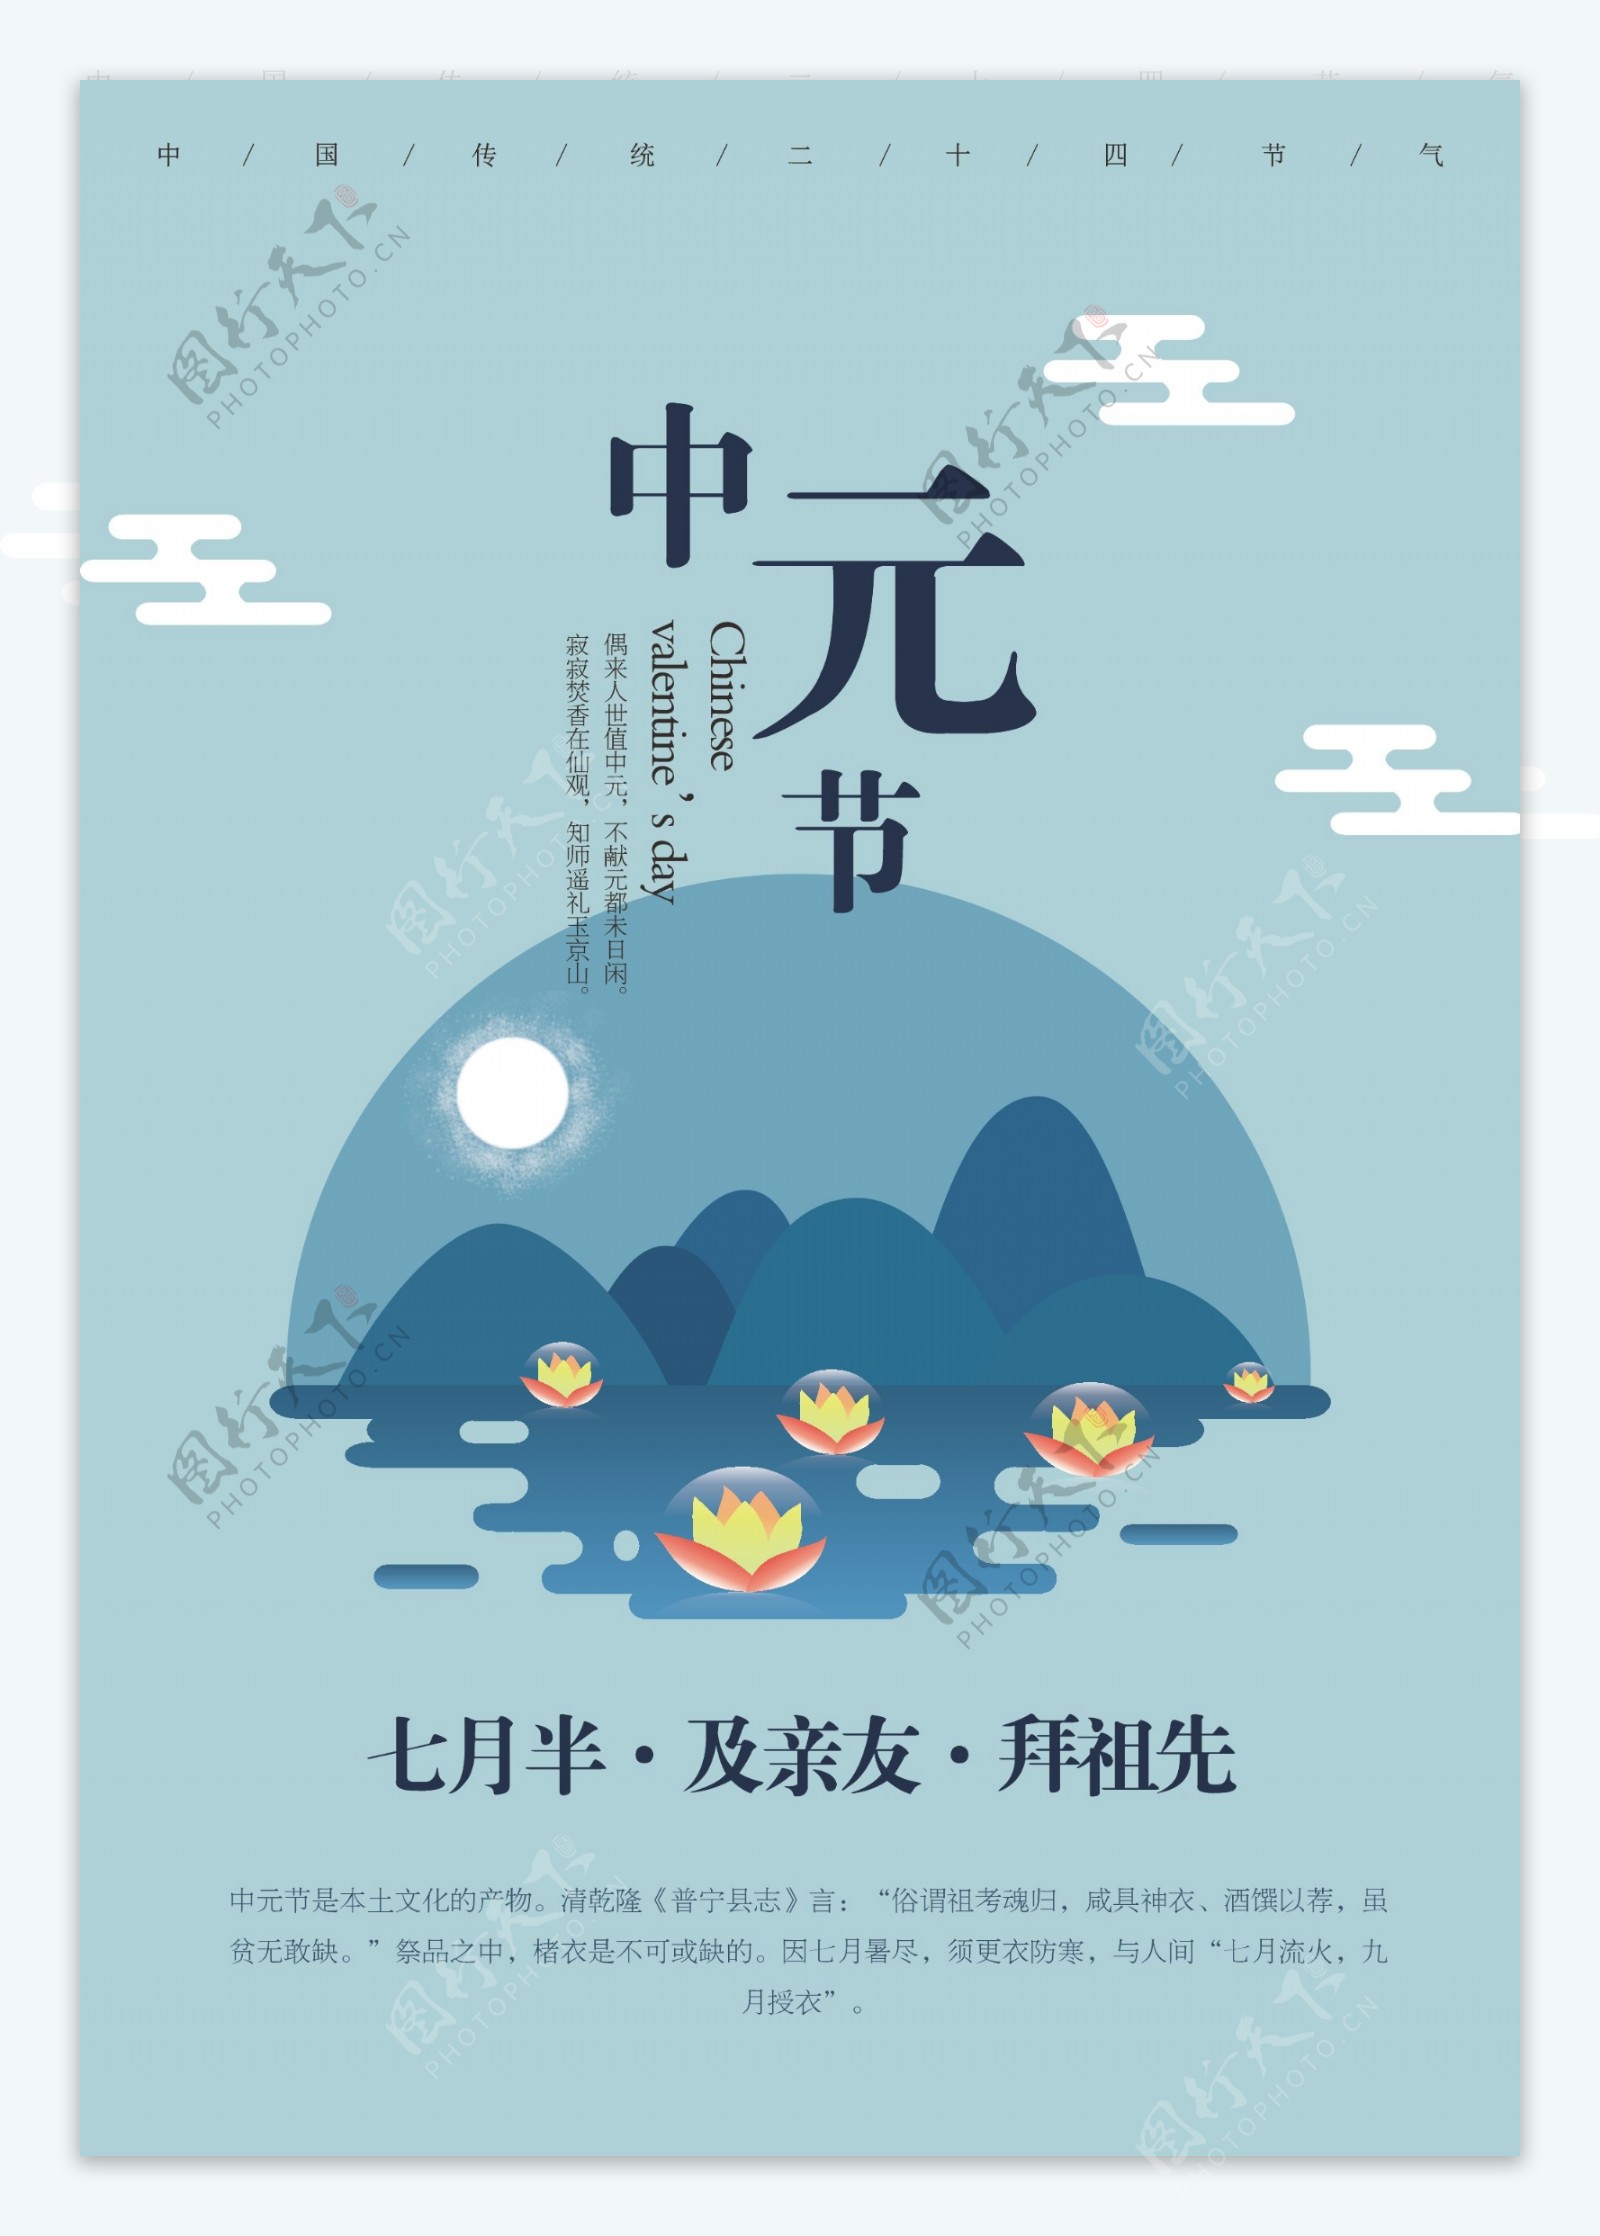 中元节节日卡通海报